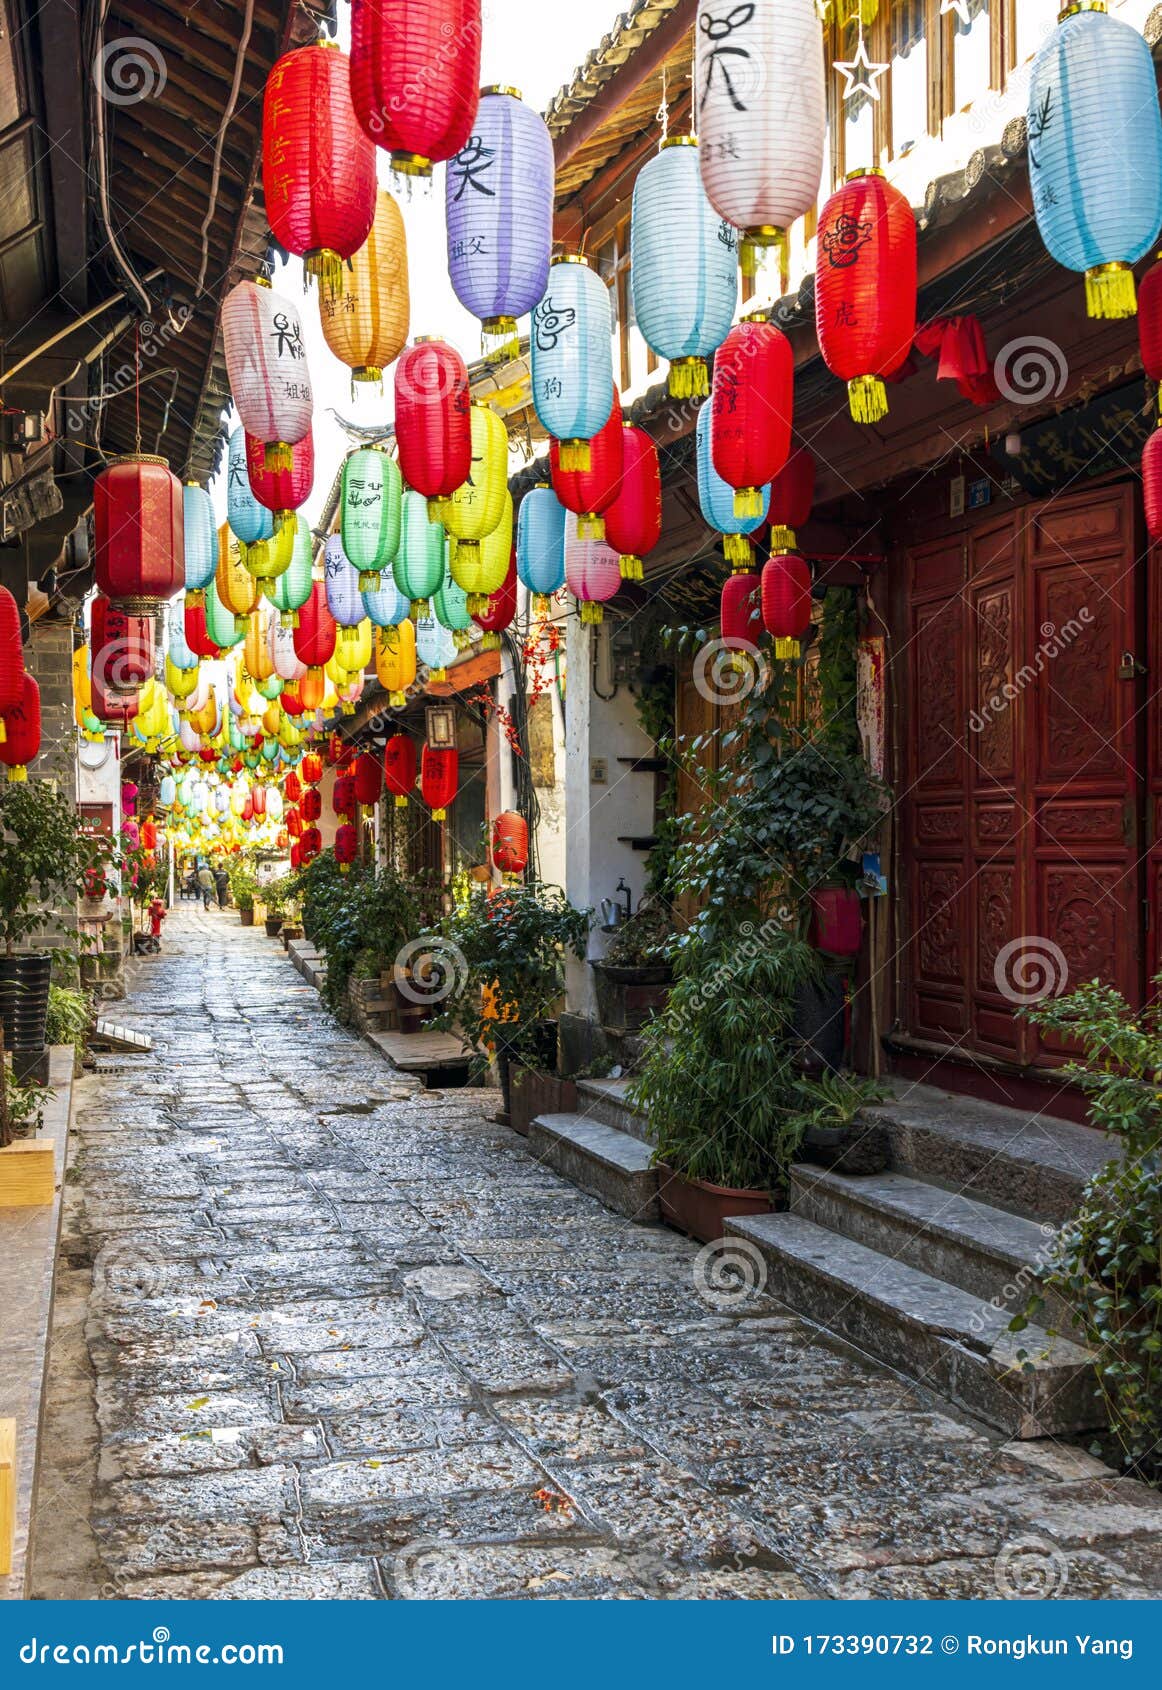 the ancient town of lijiang china